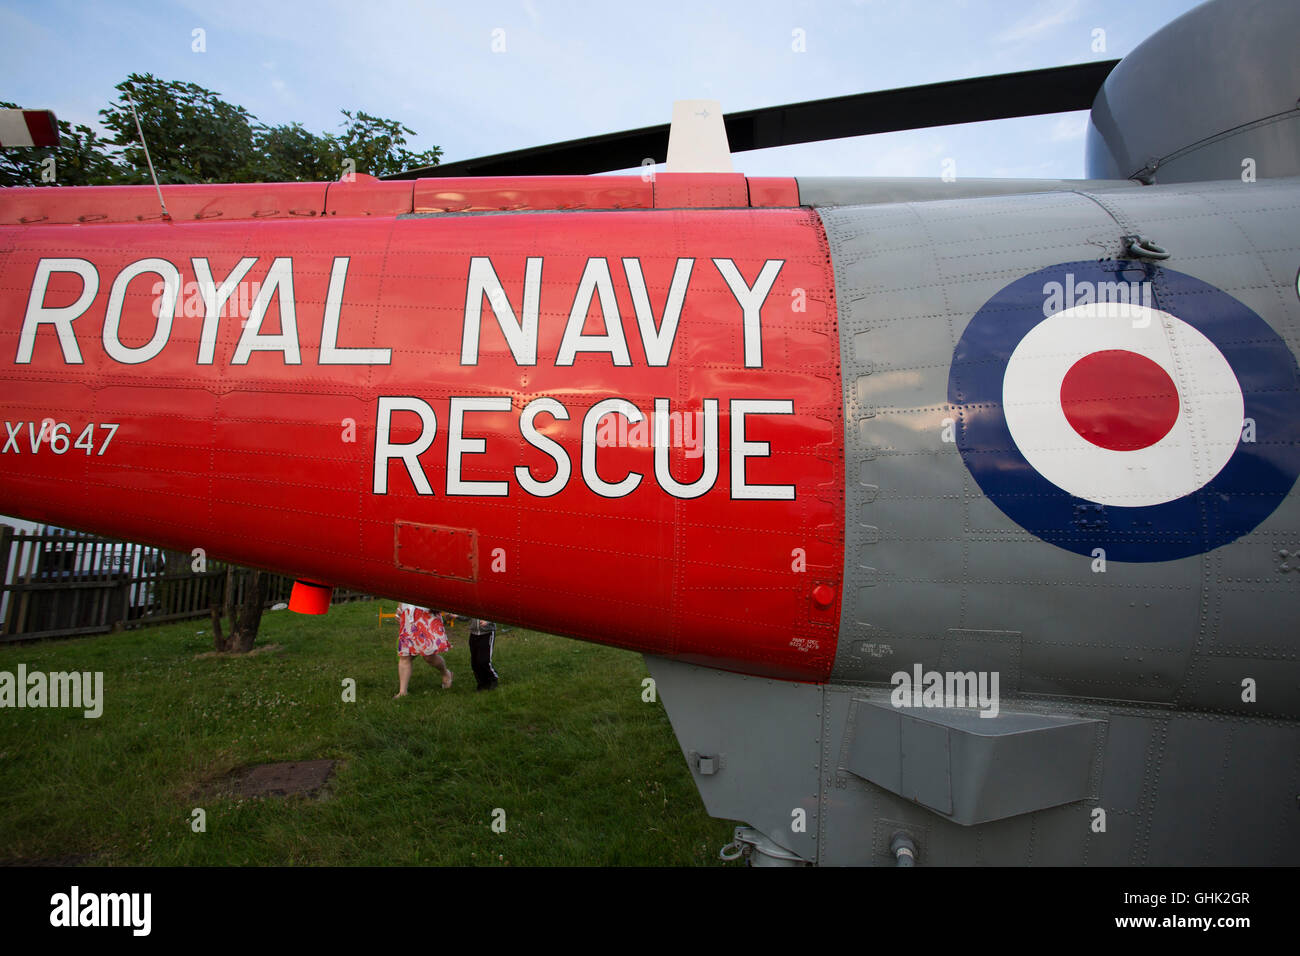 La Royal Navy Salvataggio in elicottero a Sunderland Airshow internazionale a Sunderland, Inghilterra. I visitatori avranno la possibilità di vedere e Foto Stock